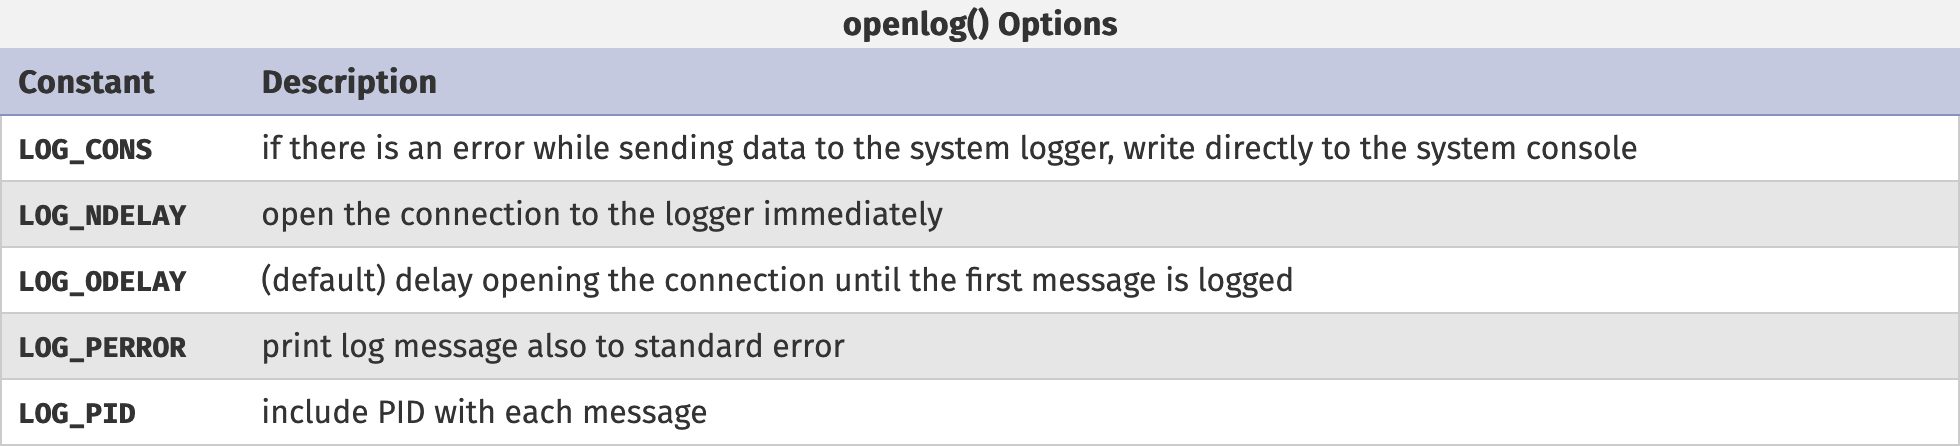 open log options